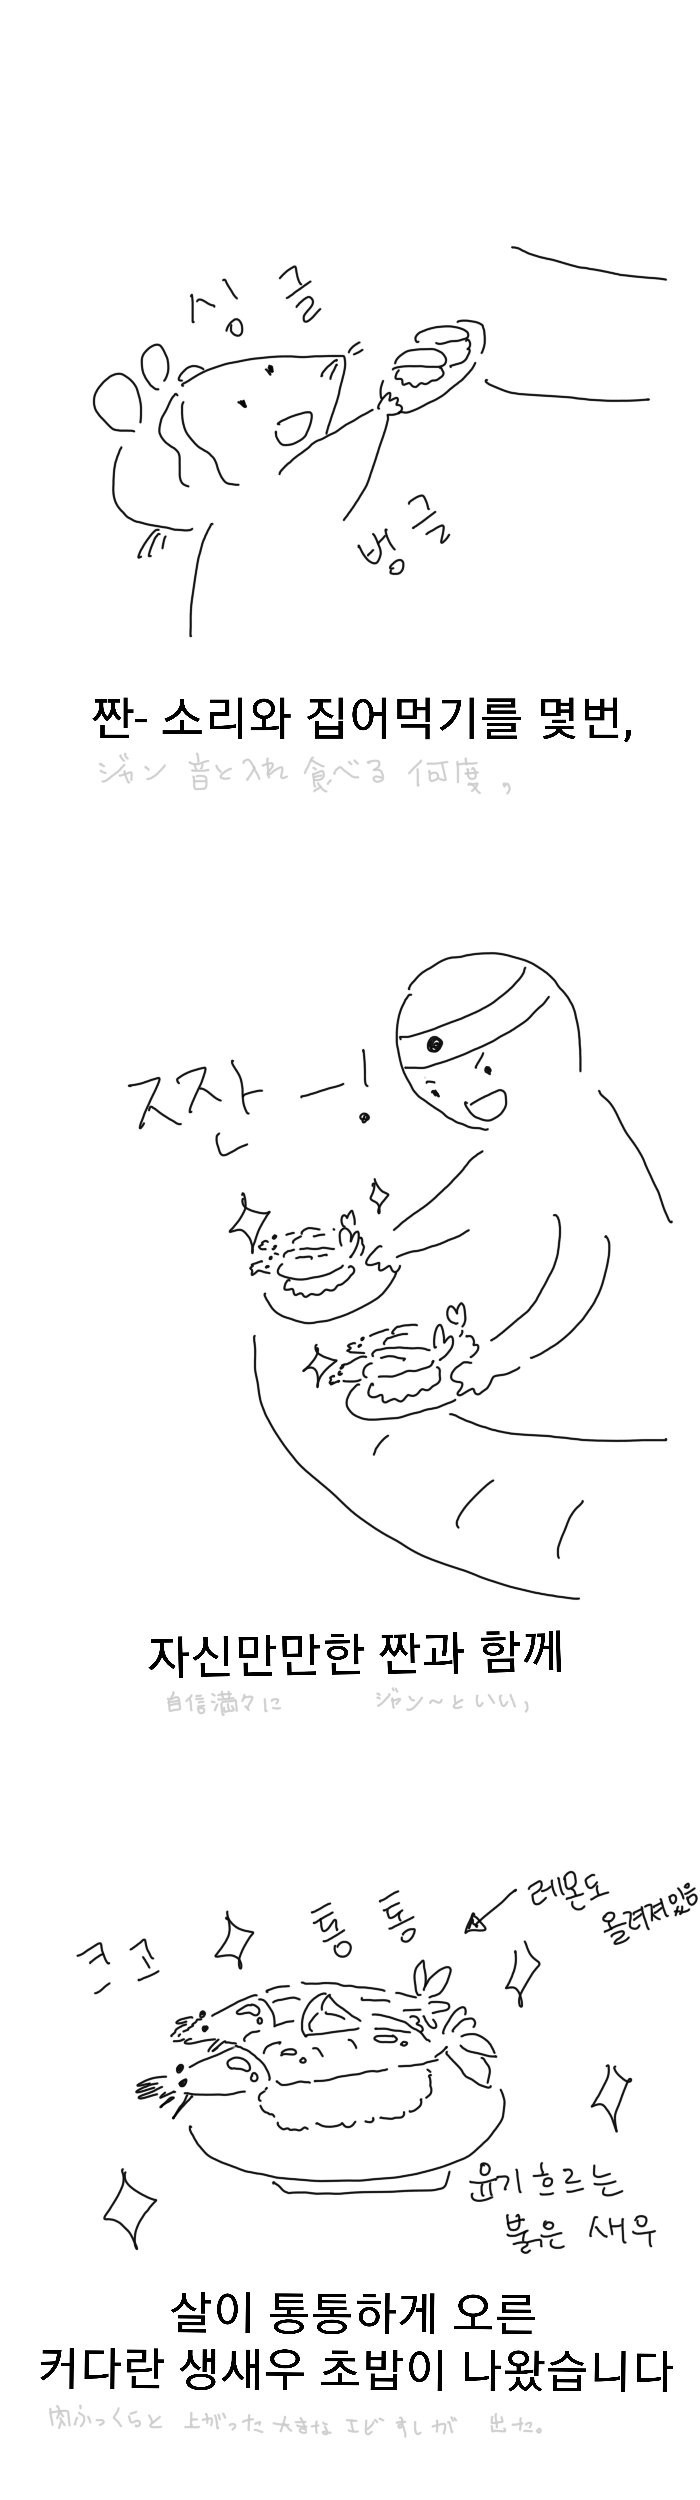 일본에서 초밥먹는.manhwa